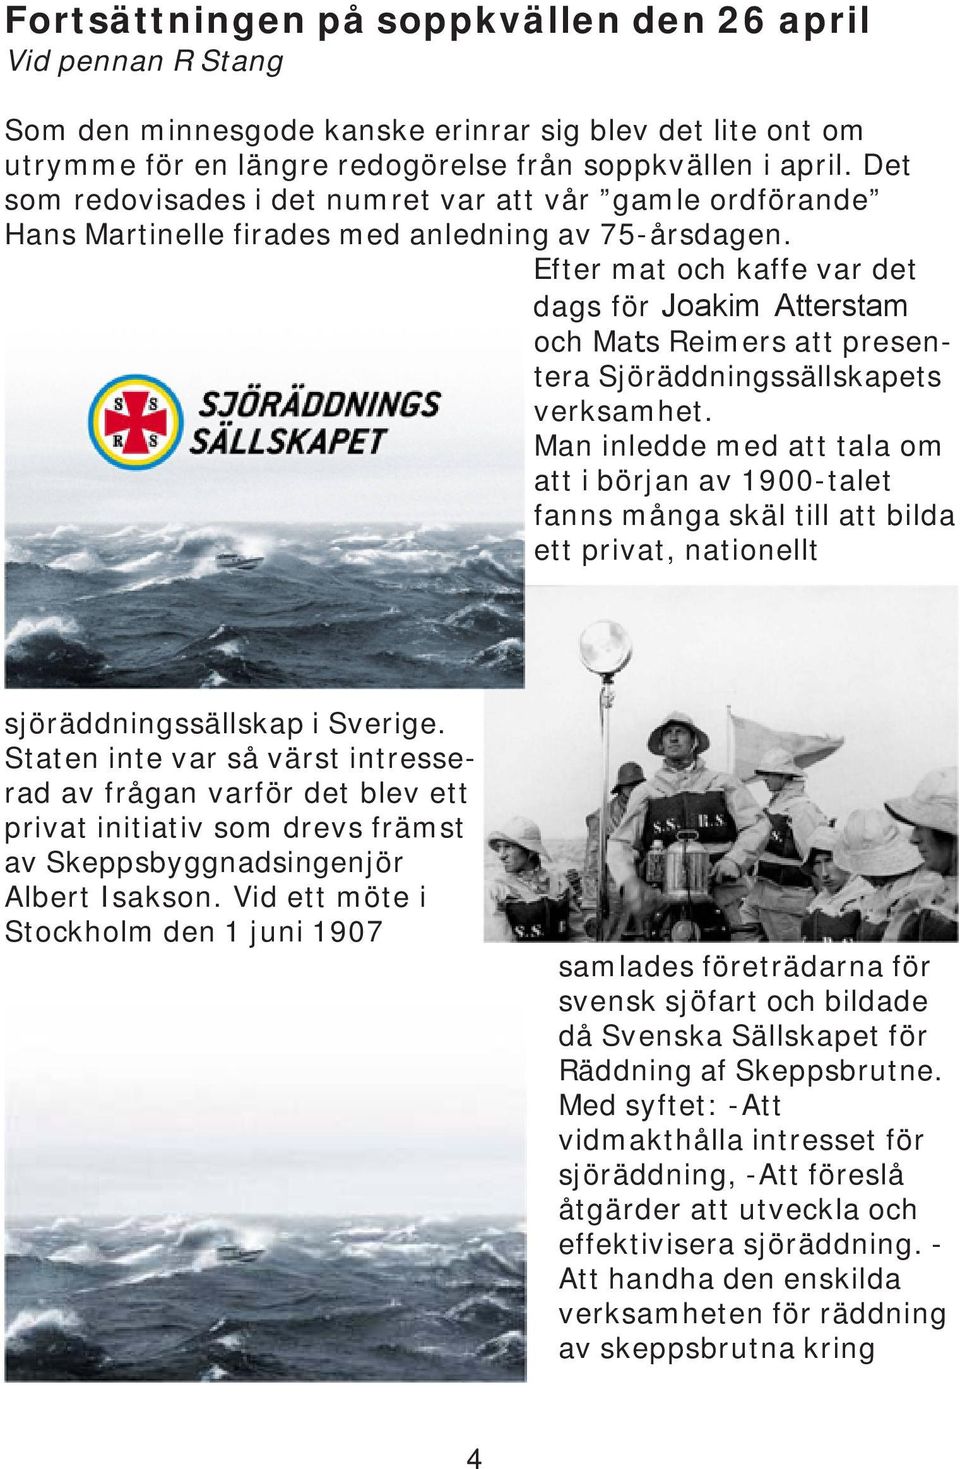 Efter mat och kaffe var det dags för Joakim Atterstam och Mats Reimers att presentera Sjöräddningssällskapets verksamhet.